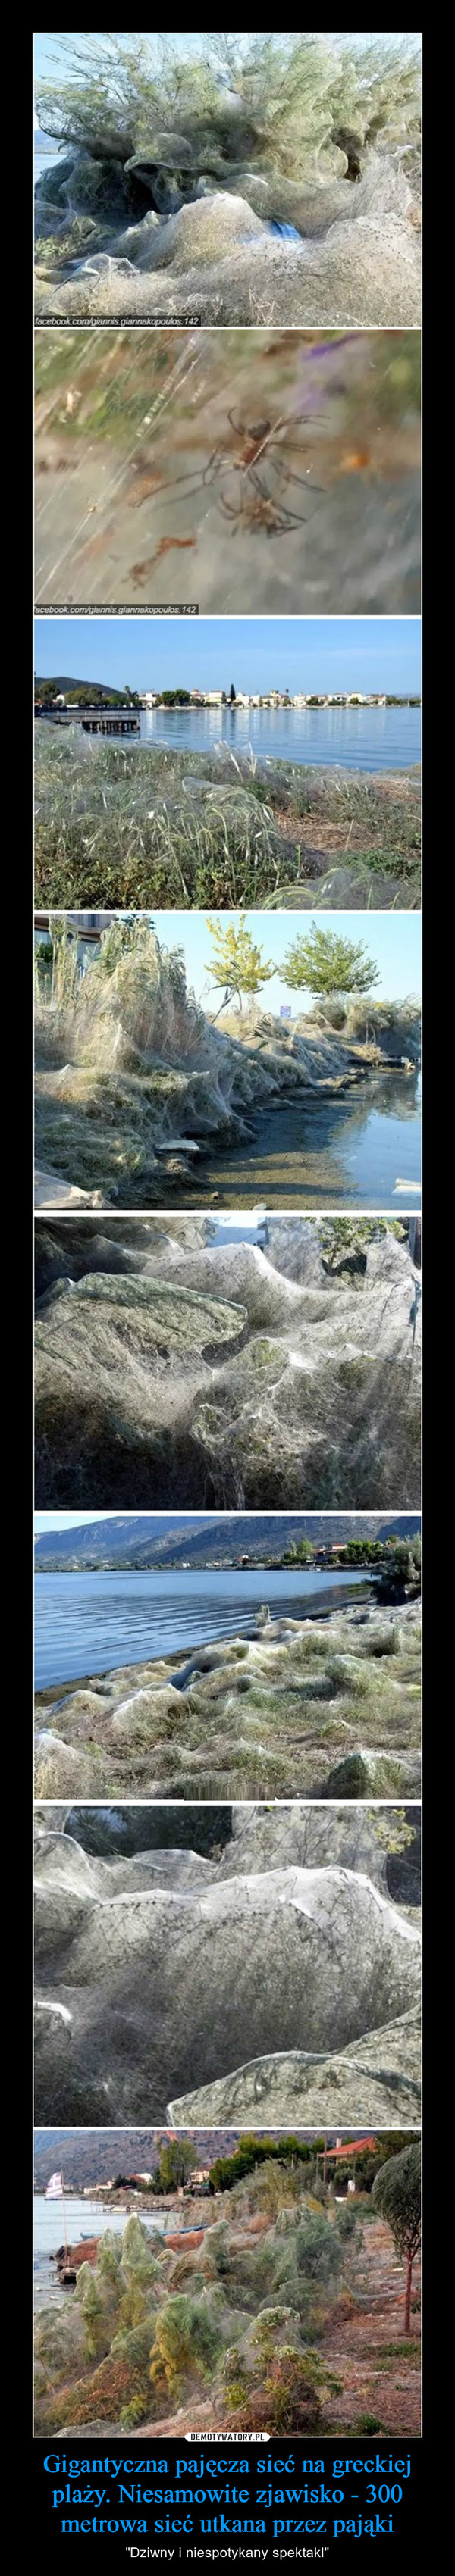 Gigantyczna pajęcza sieć na greckiej plaży. Niesamowite zjawisko - 300 metrowa sieć utkana przez pająki – "Dziwny i niespotykany spektakl" 